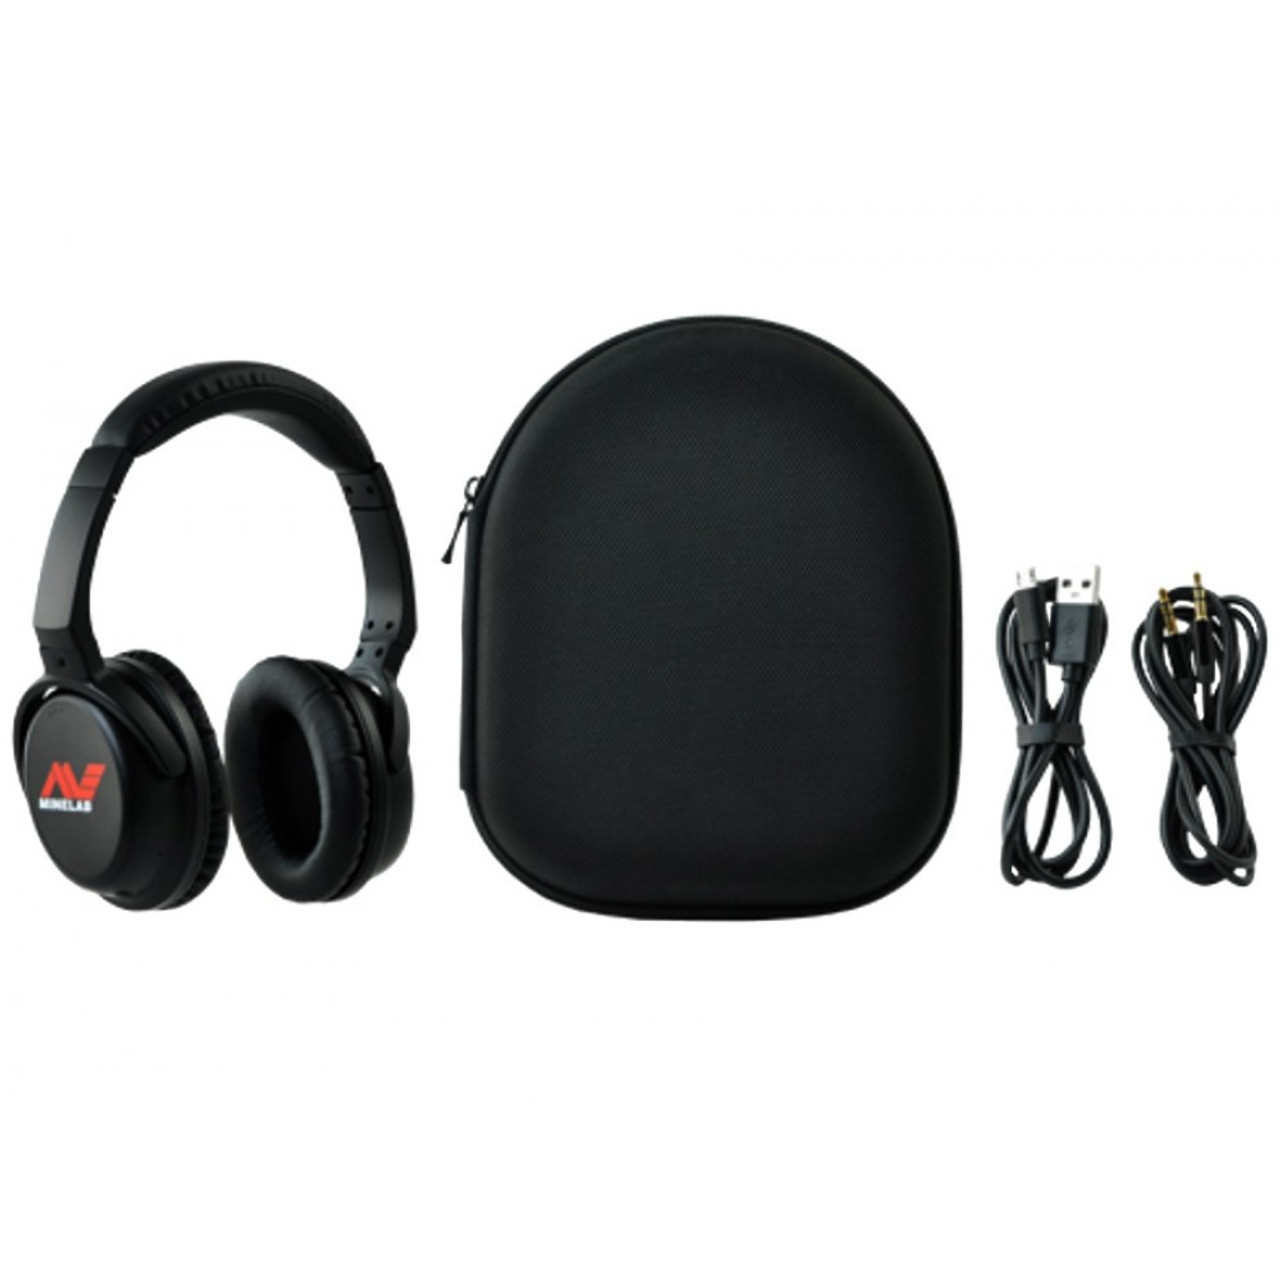 Minelab Bluetooth / apt-X Low Latency Wireless Headphones